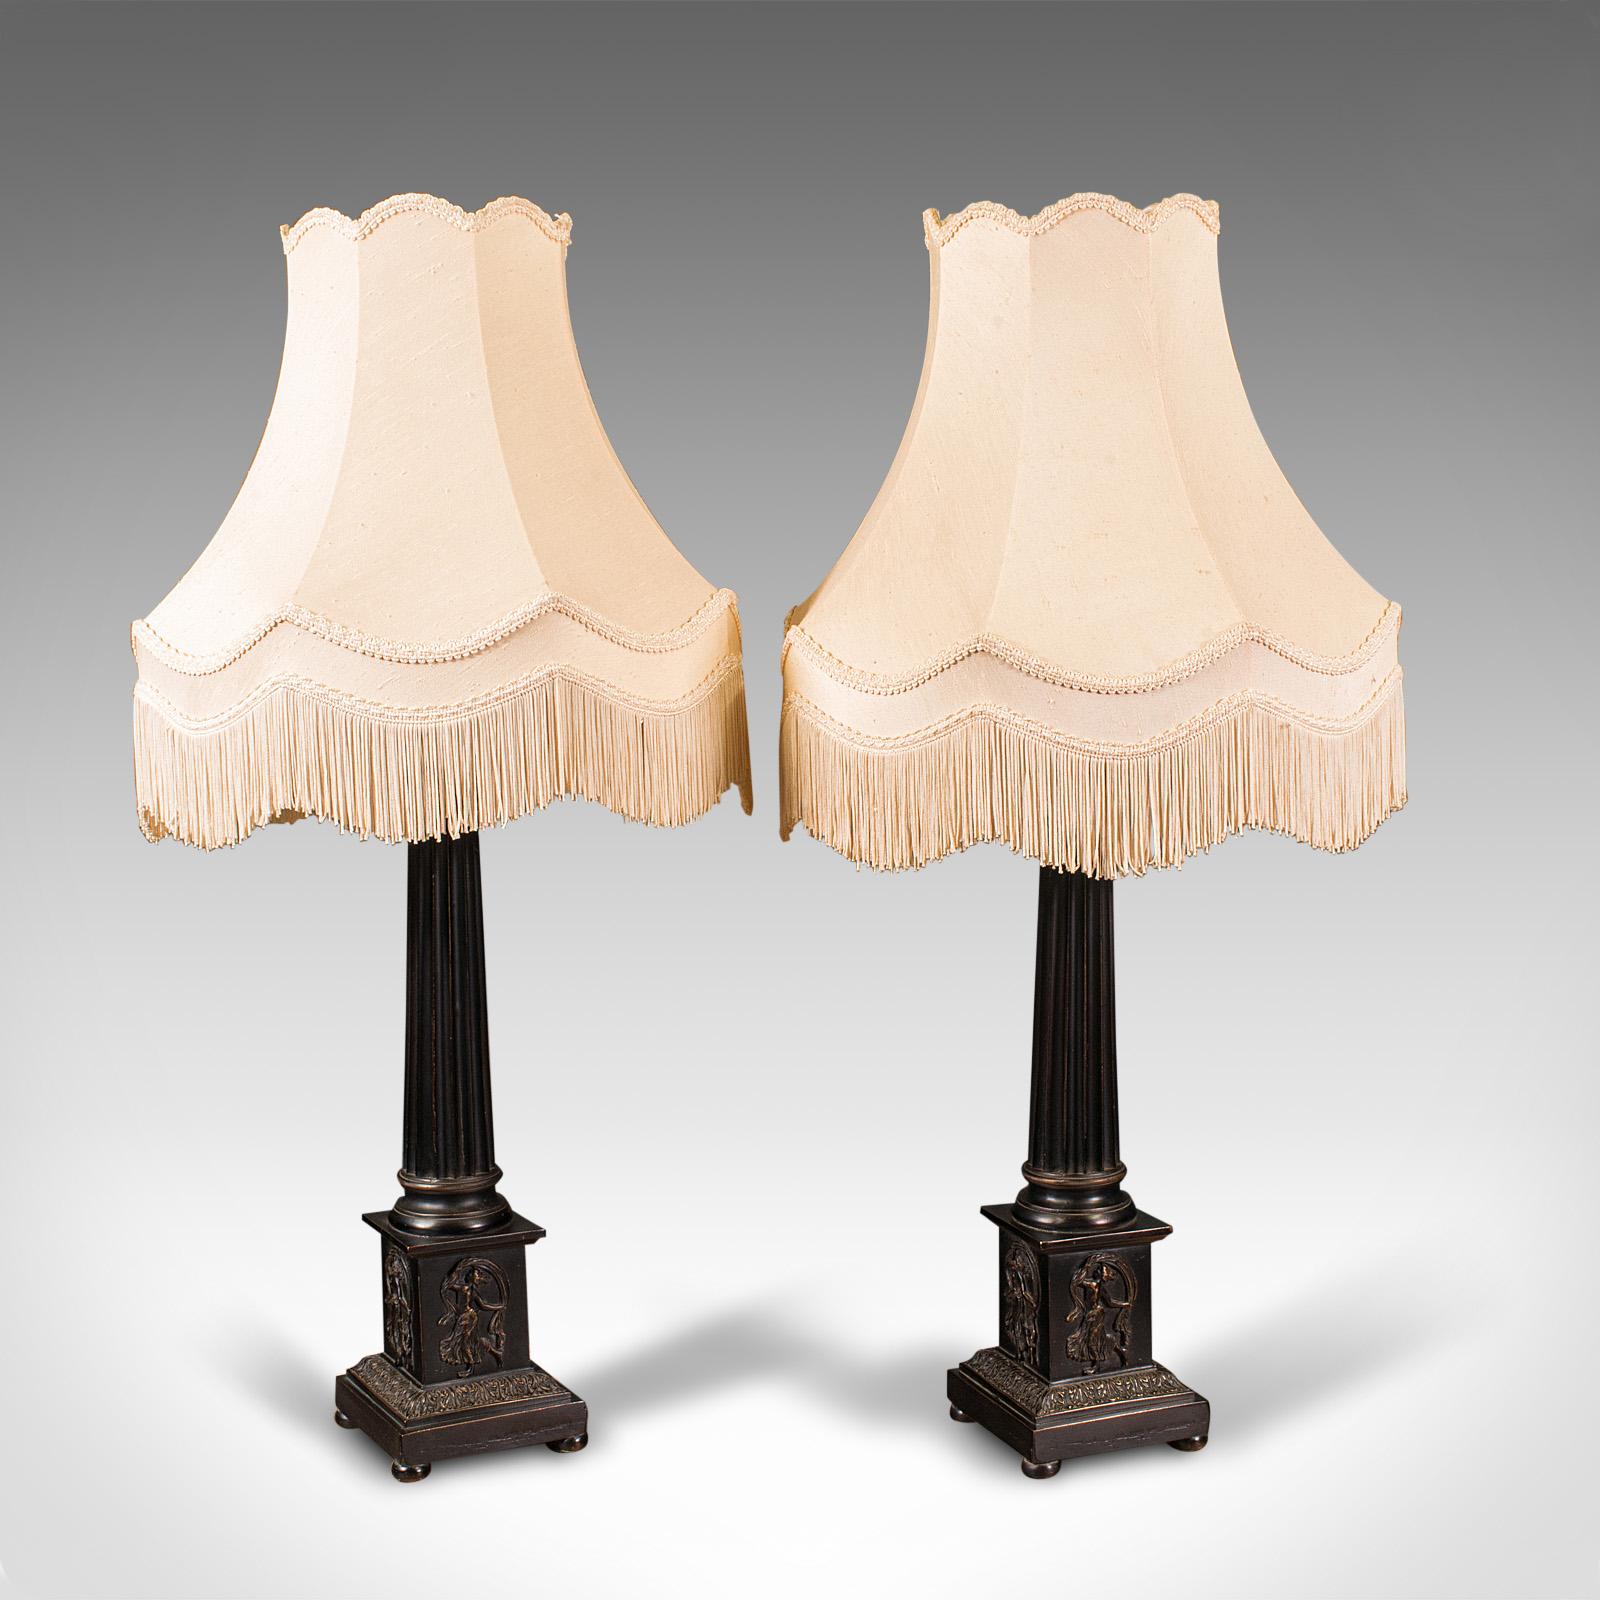 Il s'agit d'une paire de lampes corinthiennes vintage. Une lampe de table anglaise en faux bronze coulé, de goût classique, datant de la fin du 20e siècle.

De généreuses proportions, avec une base de colonne corinthienne distinguée
Présente une